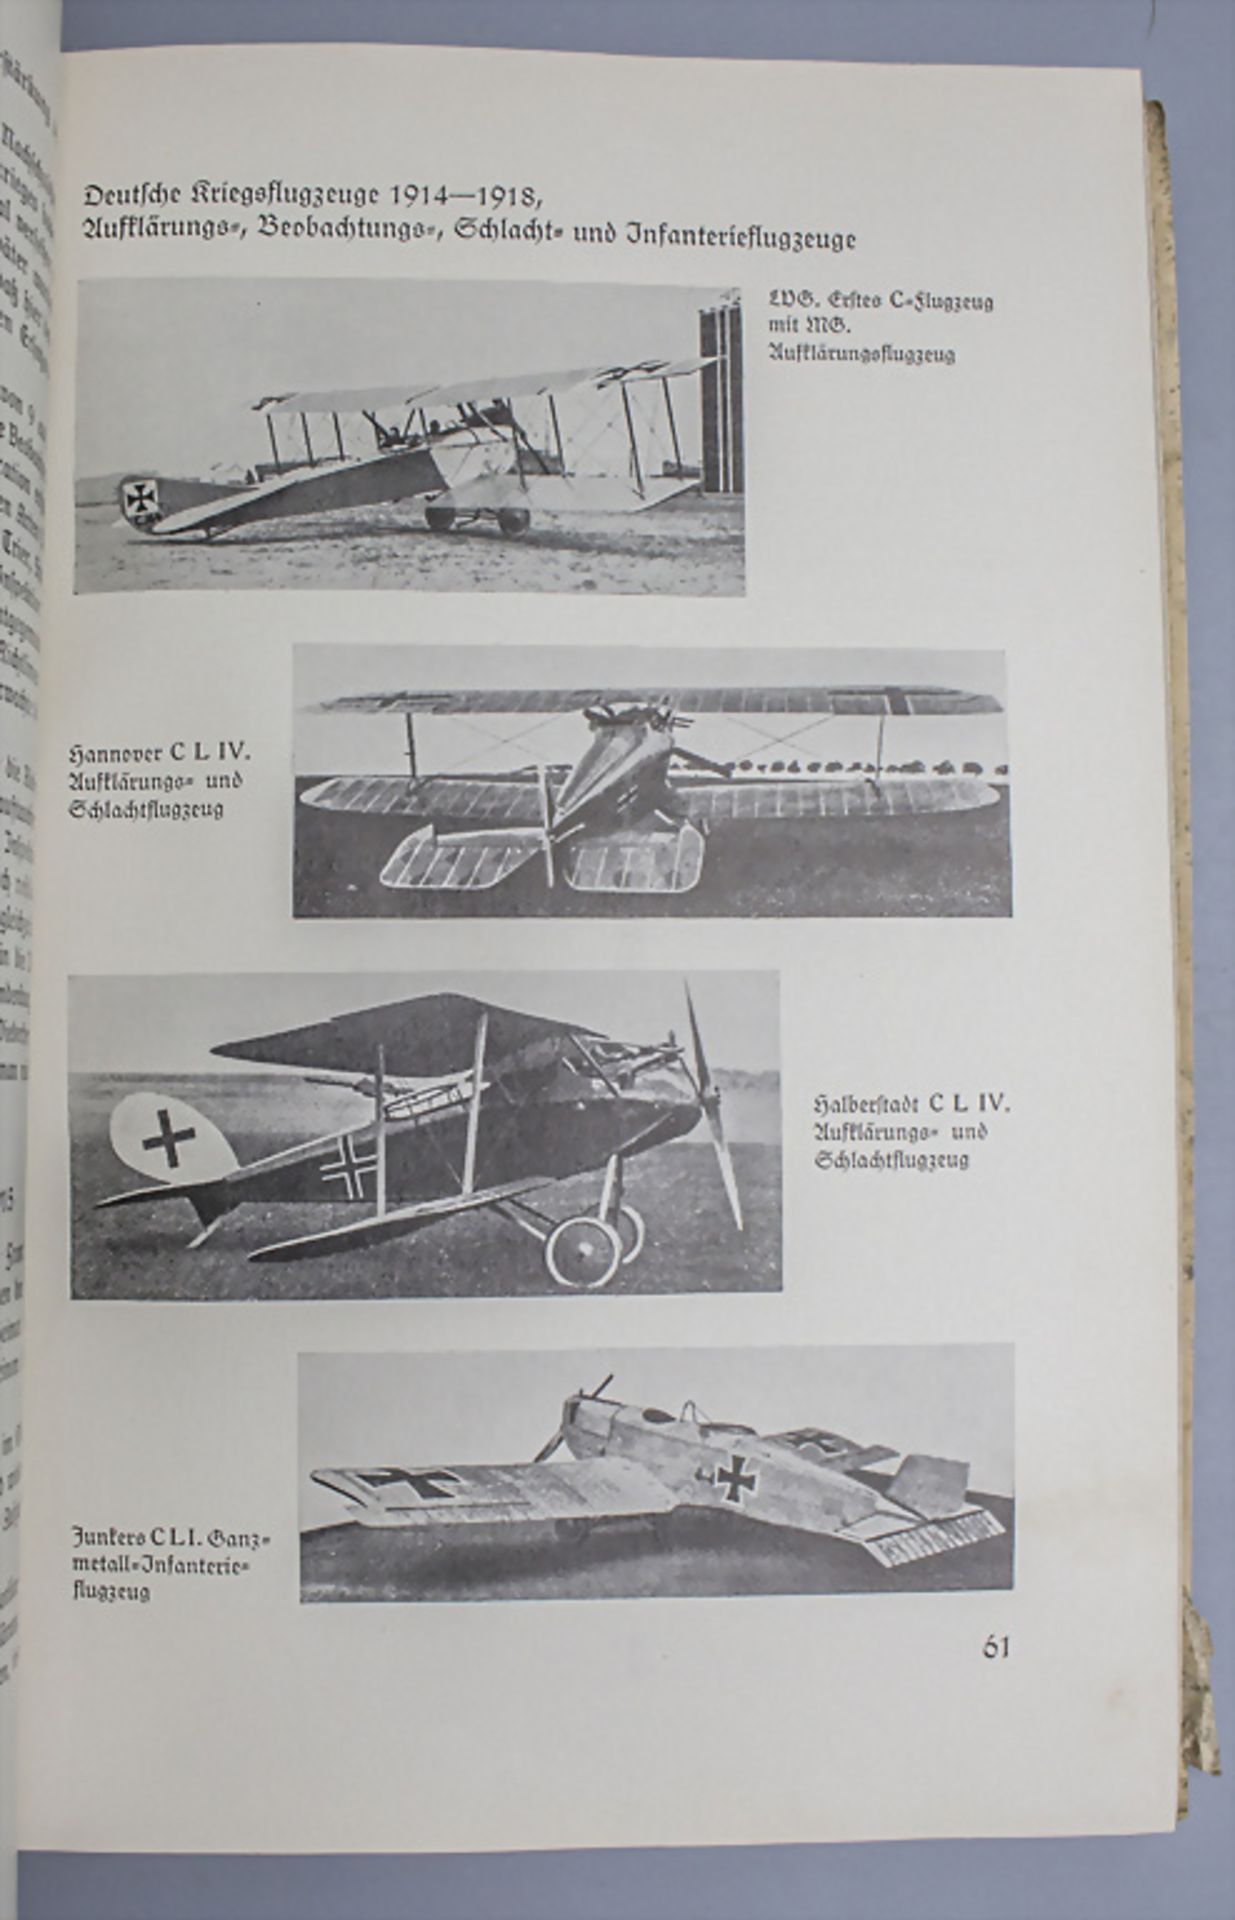 Geschichte der Luftwaffe / History of the German air force, Hilmer Freiherr von Bülow, 1934 - Image 5 of 5